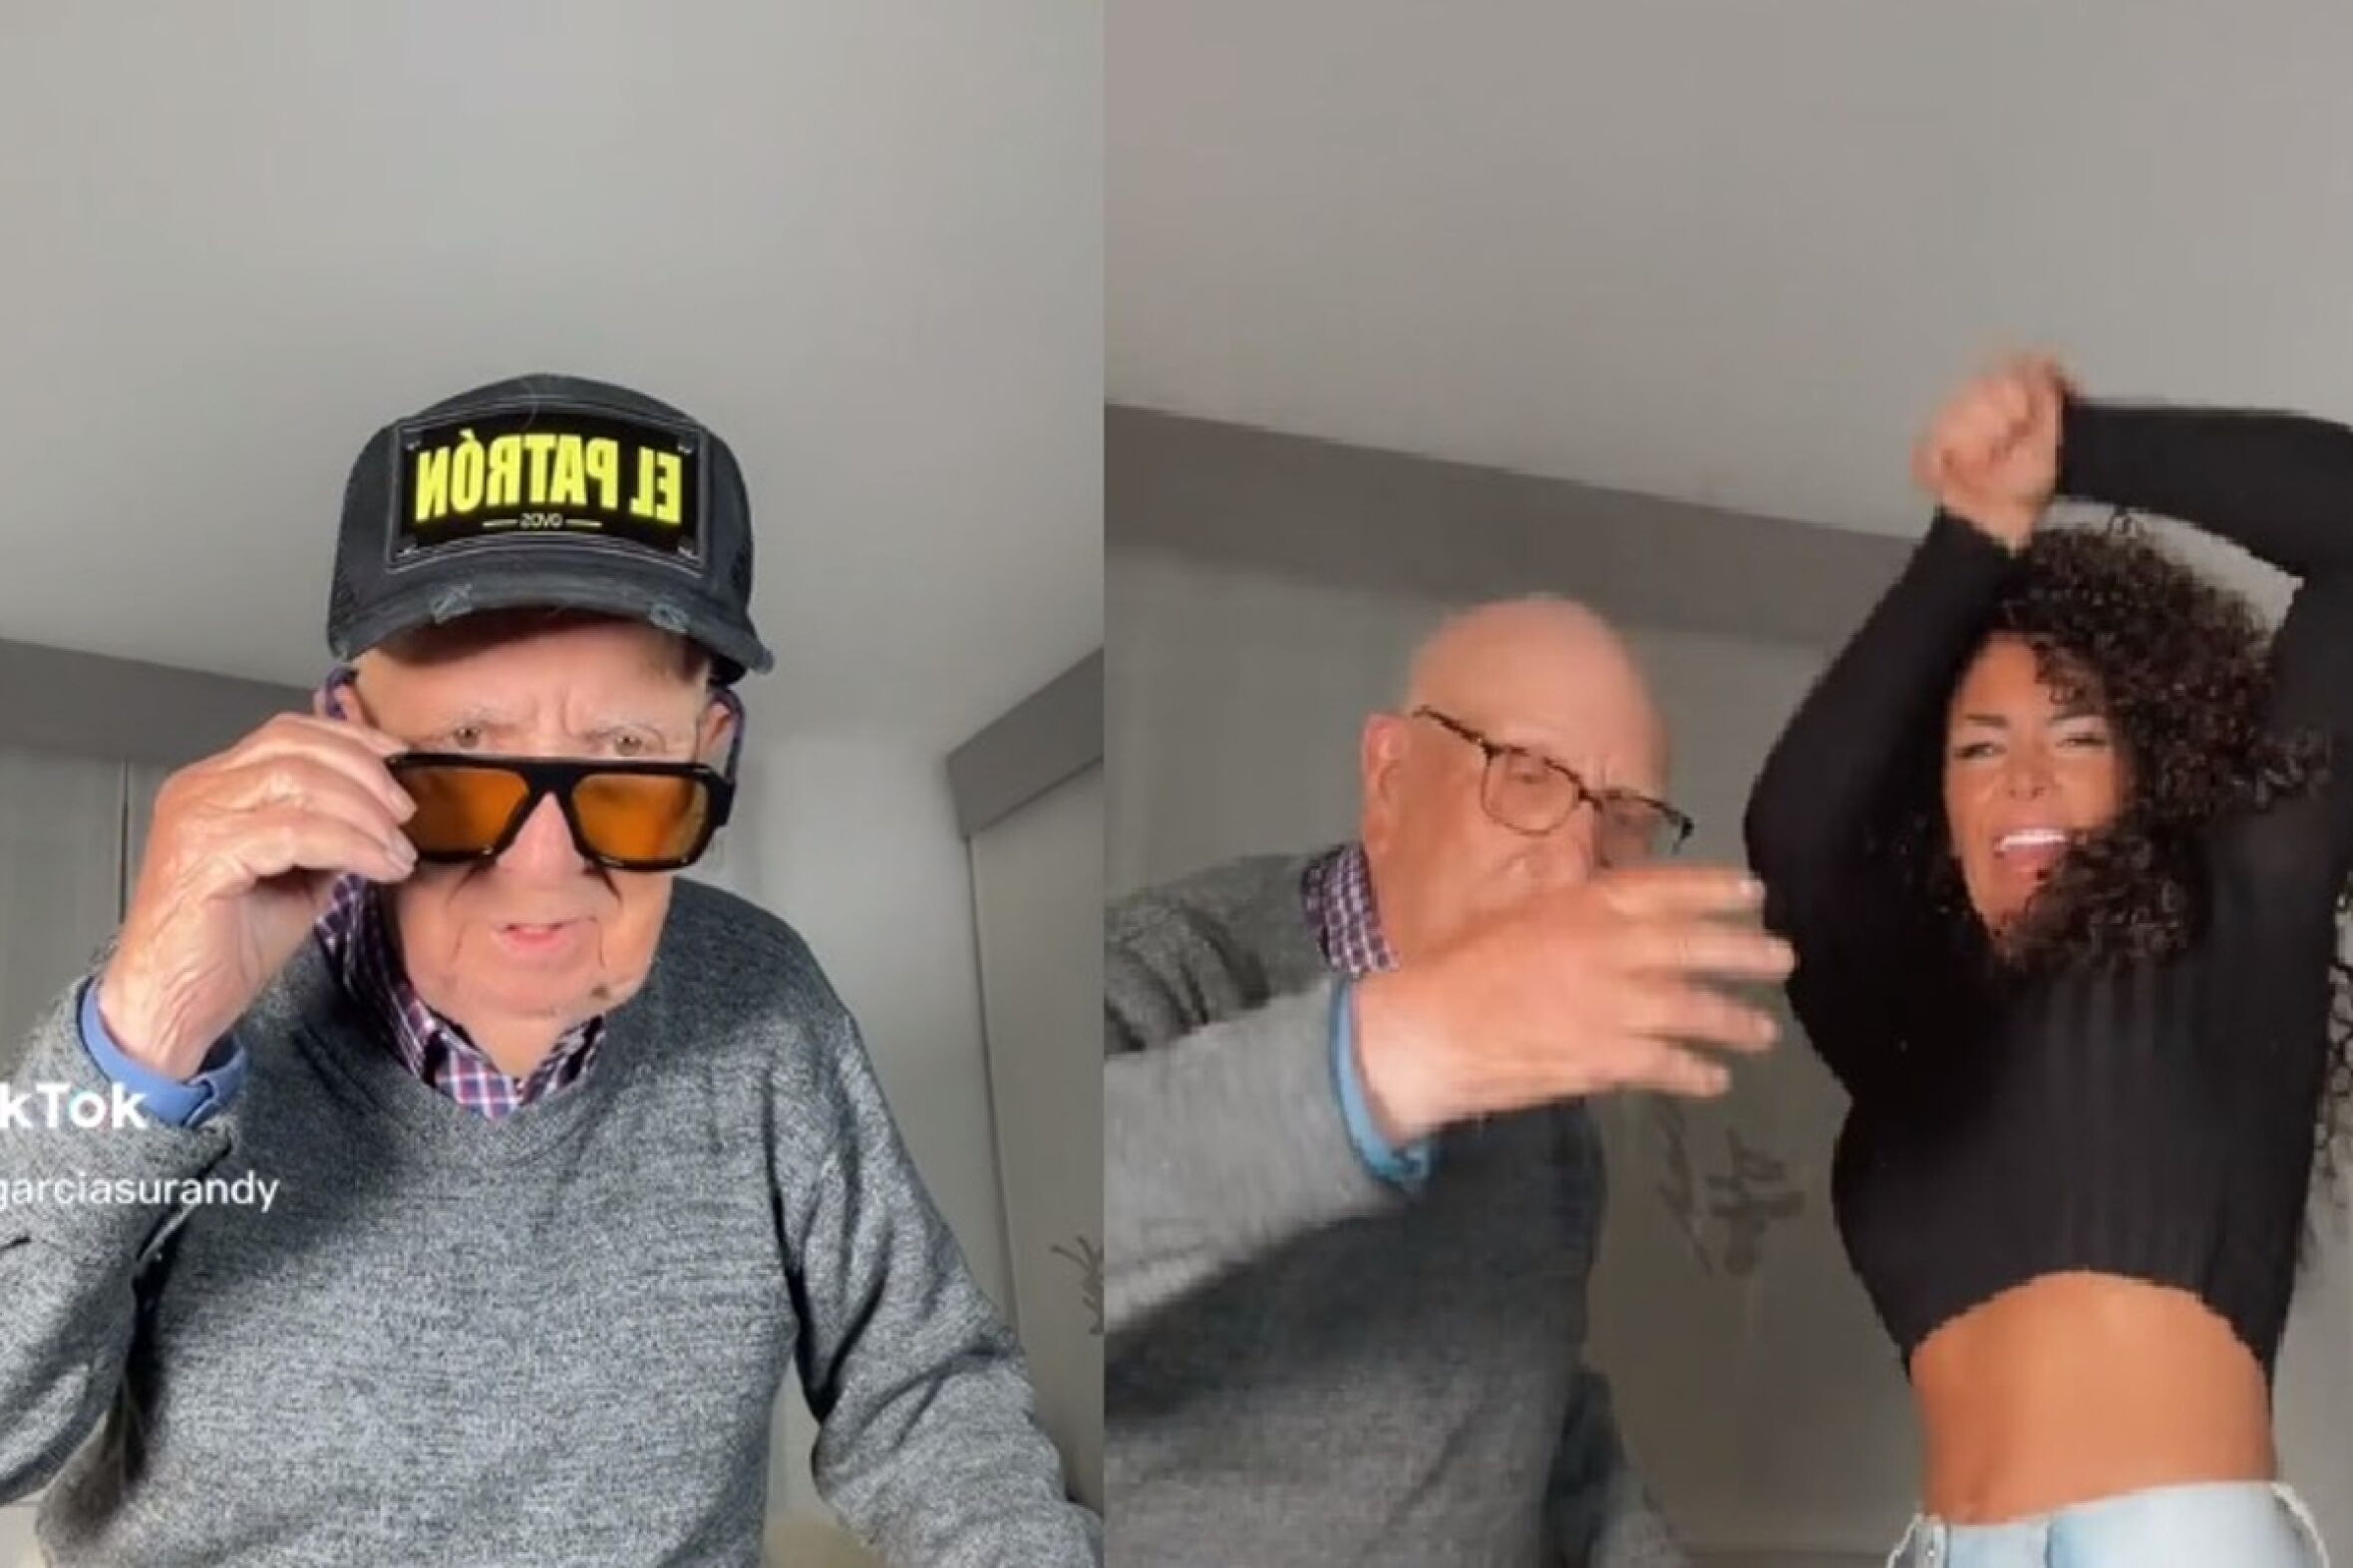 Avô de 96 anos supreende ao recriar tendências do TikTok